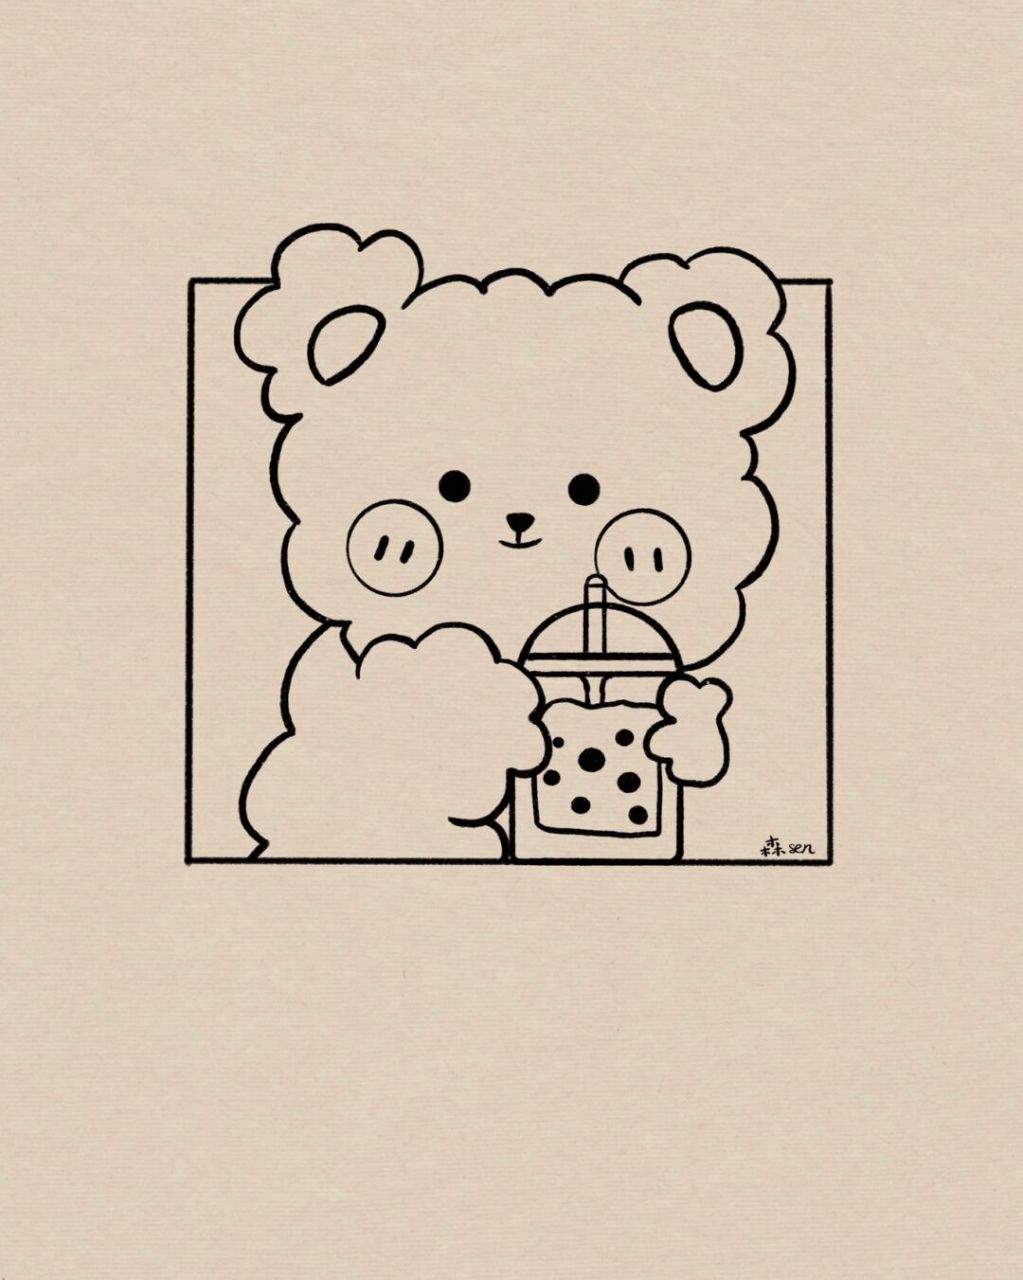 小熊喝水简笔画图片